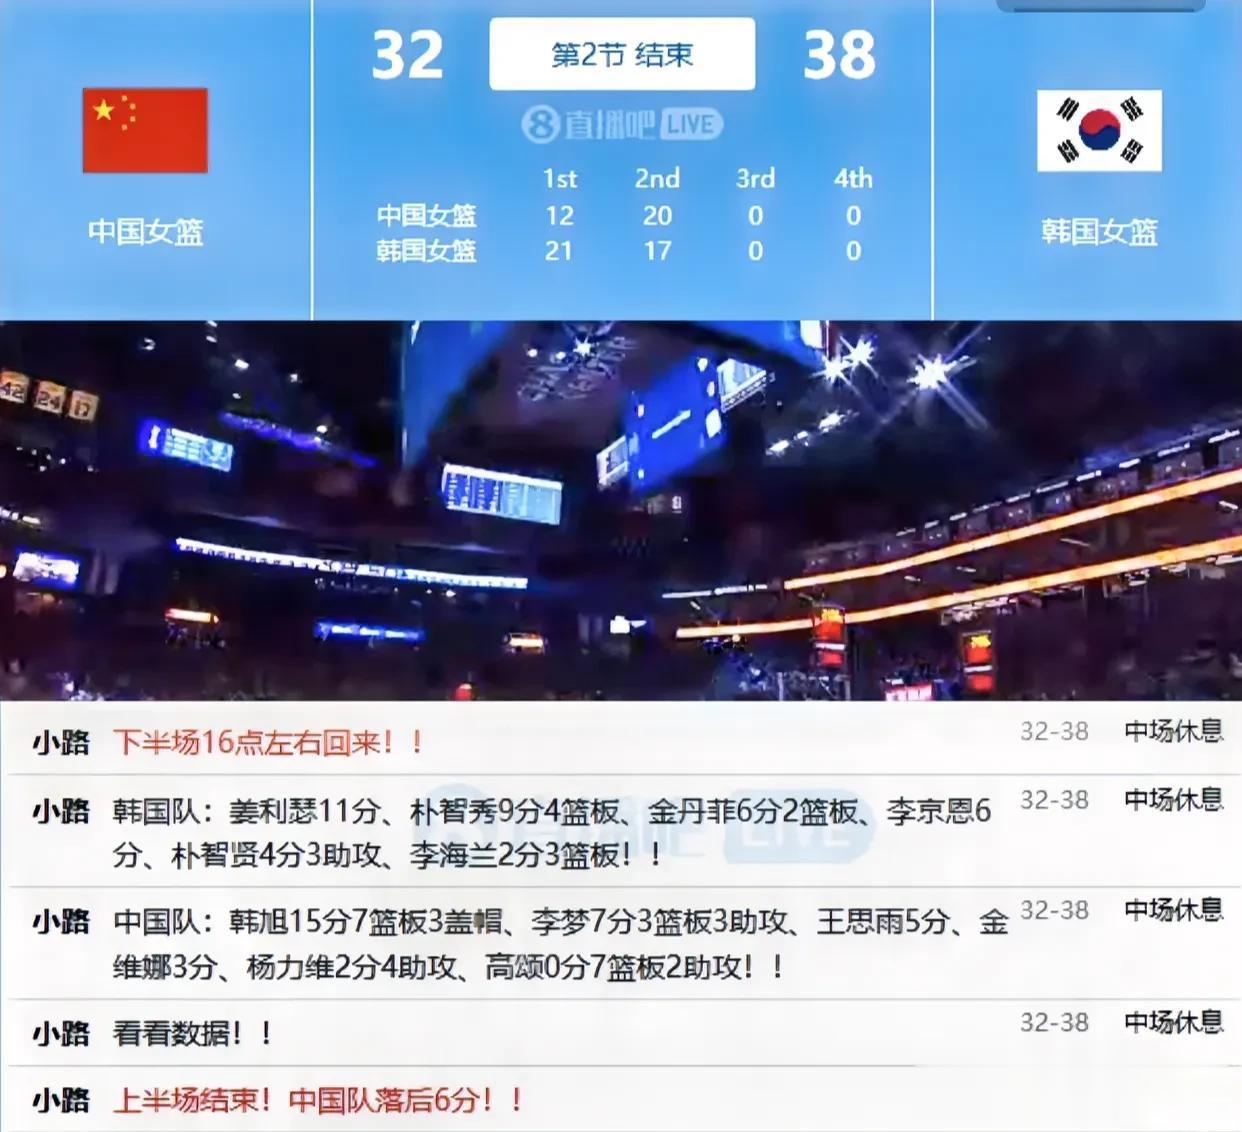 女篮亚洲杯中国队半场落后韩国队6分，加油、下半场定要实现逆转！

上半场比赛结束(1)